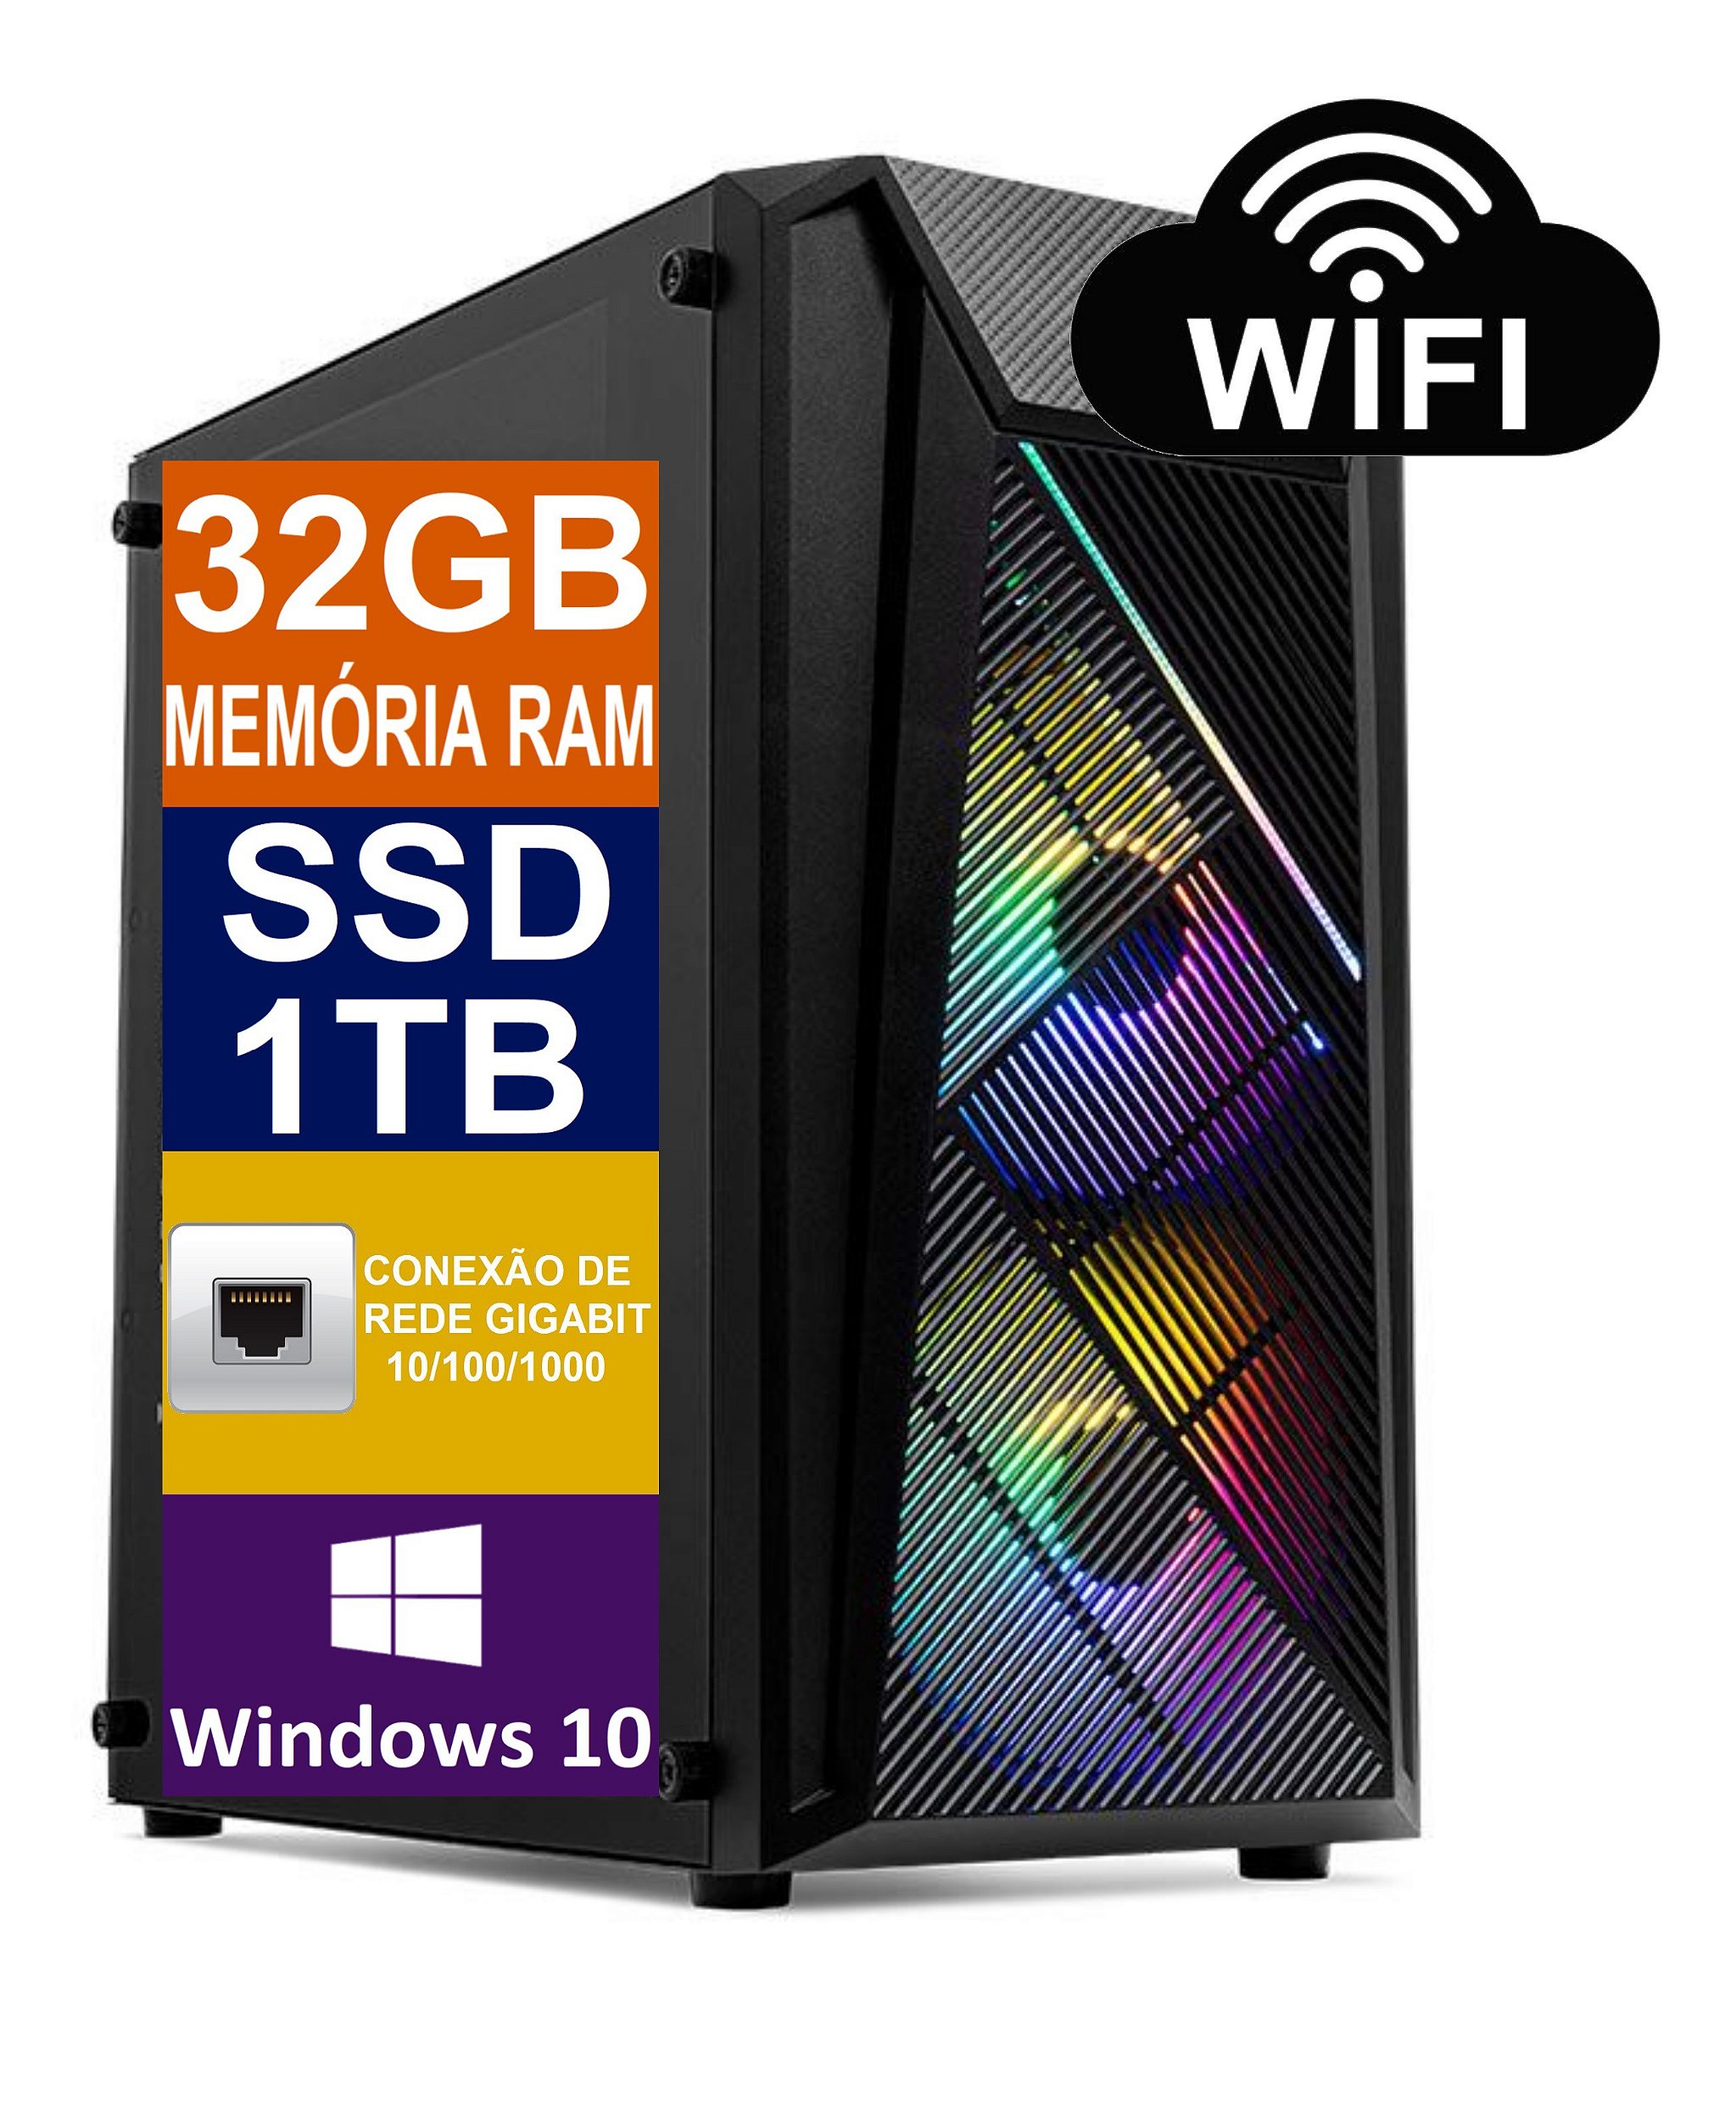 PC Computador Cpu Intel Core I5 6500 (Sexta Geração) / 32GB Memória Ram  DDR4 / SSD 1TB M2 NVME / Windows 10 Pro - Tech Power Shop